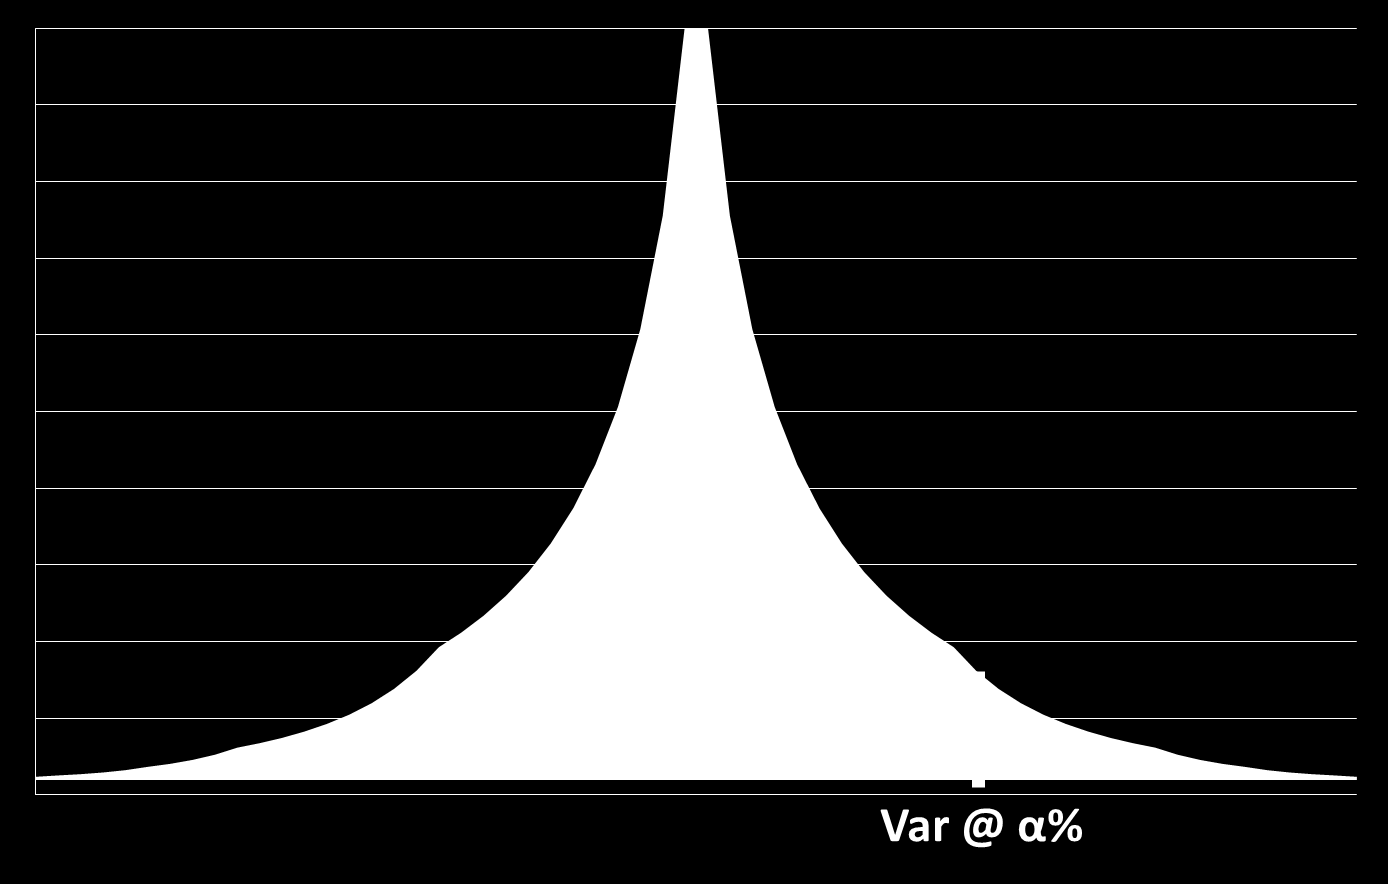 52 CAPÍTULO 2. MODELO DE COMERCIALIZAÇÃO DE ENERGIA Assim, o nível máximo de perda de valor, VaR, para um nível de confiança α%, é definido por α = V ar f(x)dx (2.